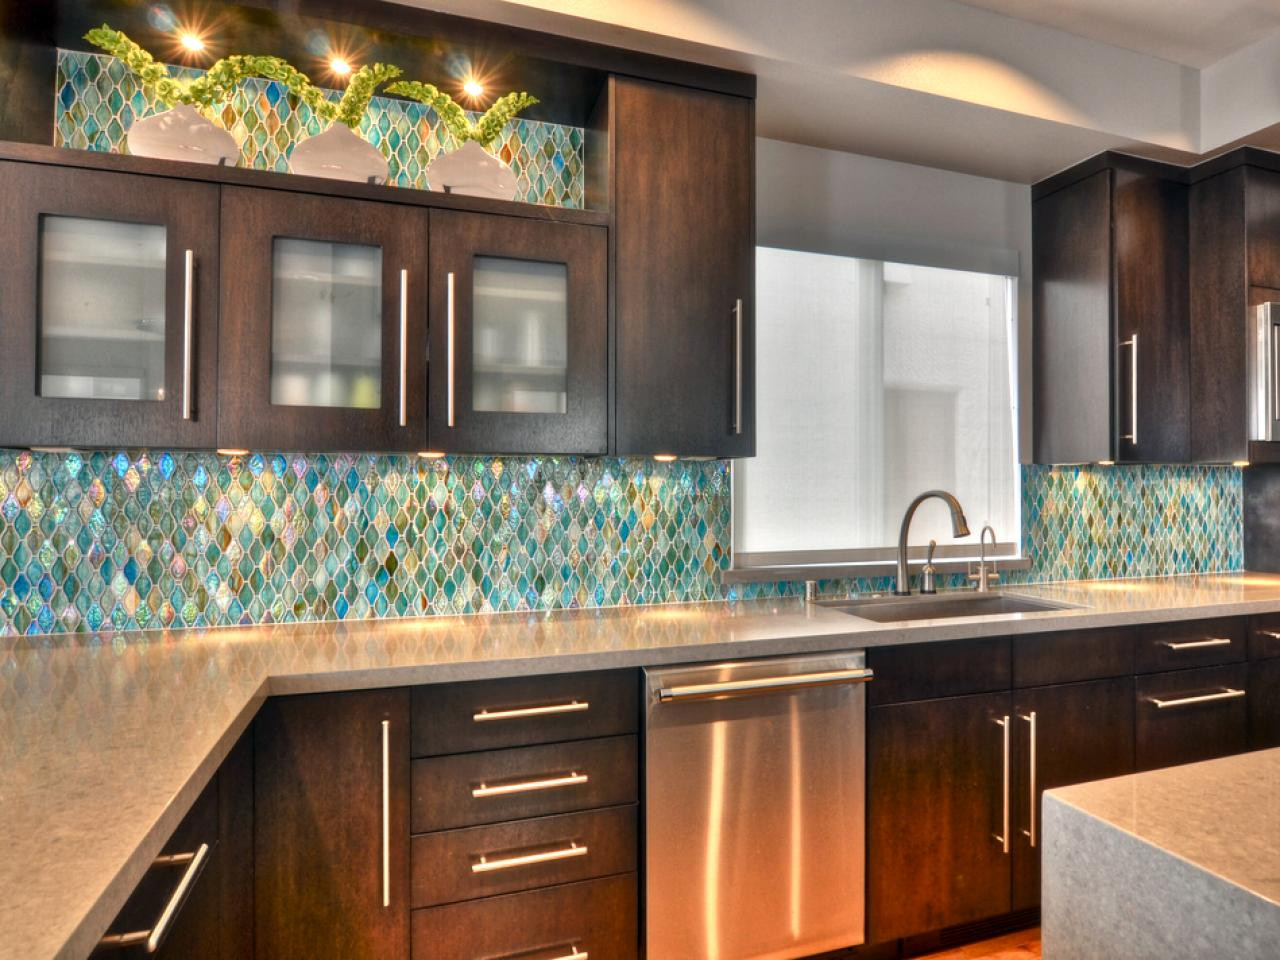 Backsplash Designs Kitchen
 75 Kitchen Backsplash Ideas for 2020 Tile Glass Metal etc